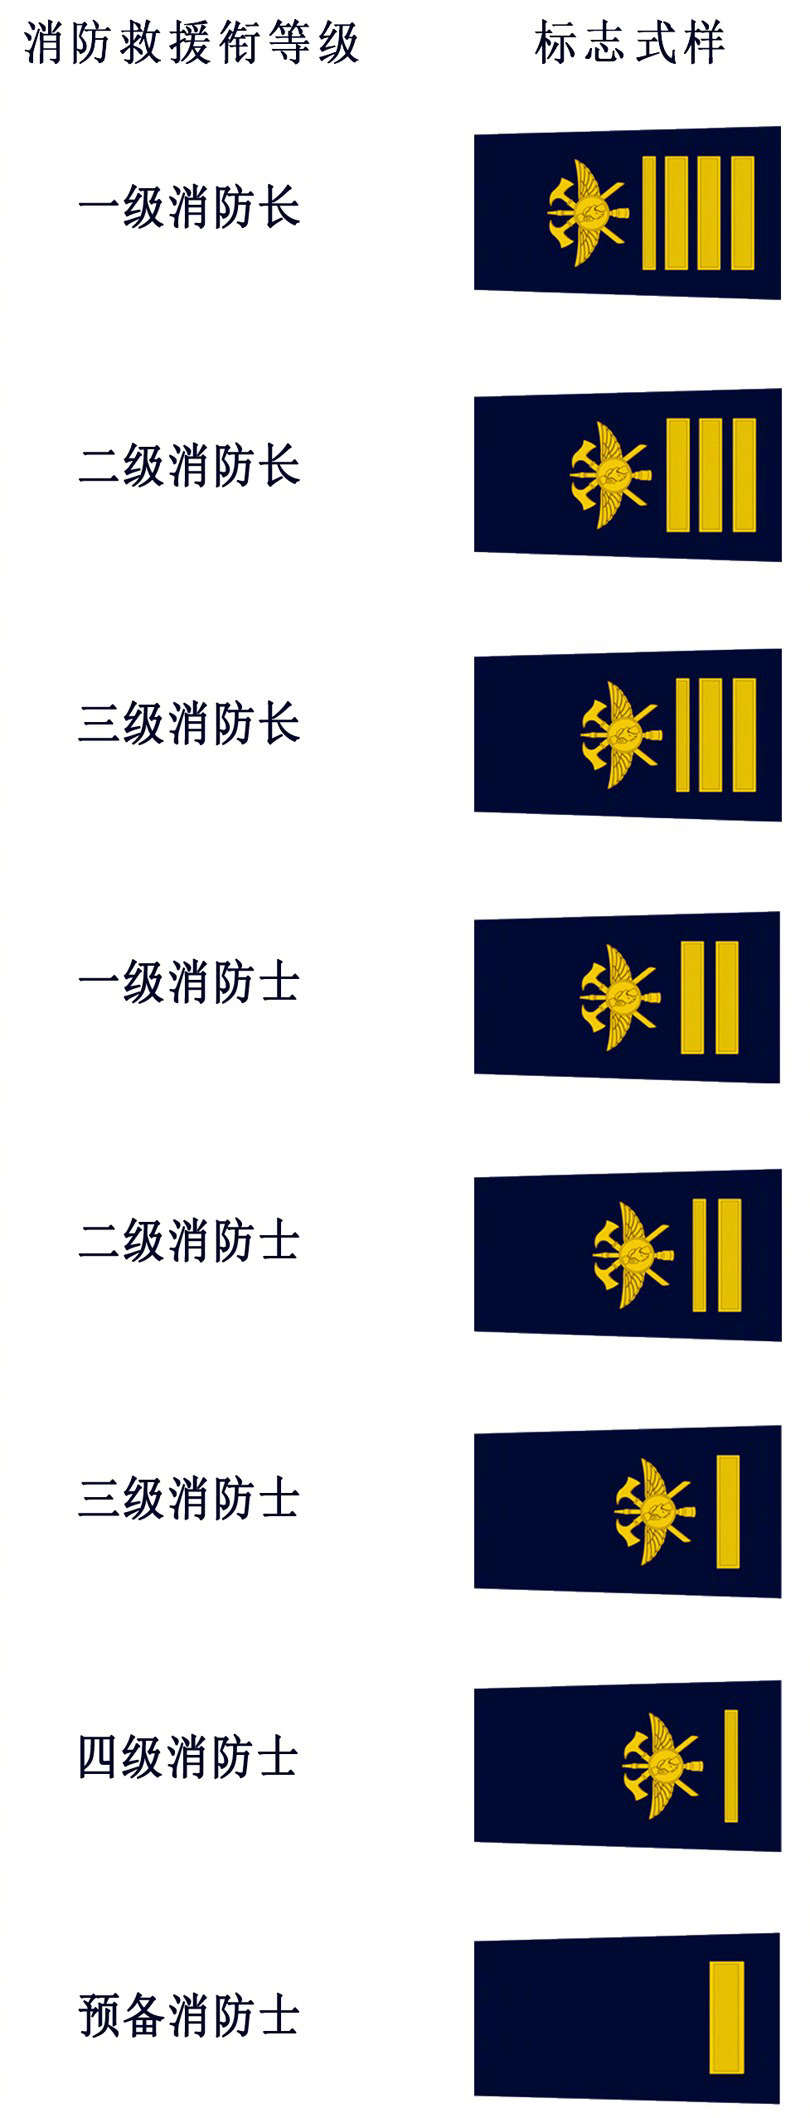 File 中华人民共和国消防救援衔套式肩章 Jpg 维基百科 自由的百科全书